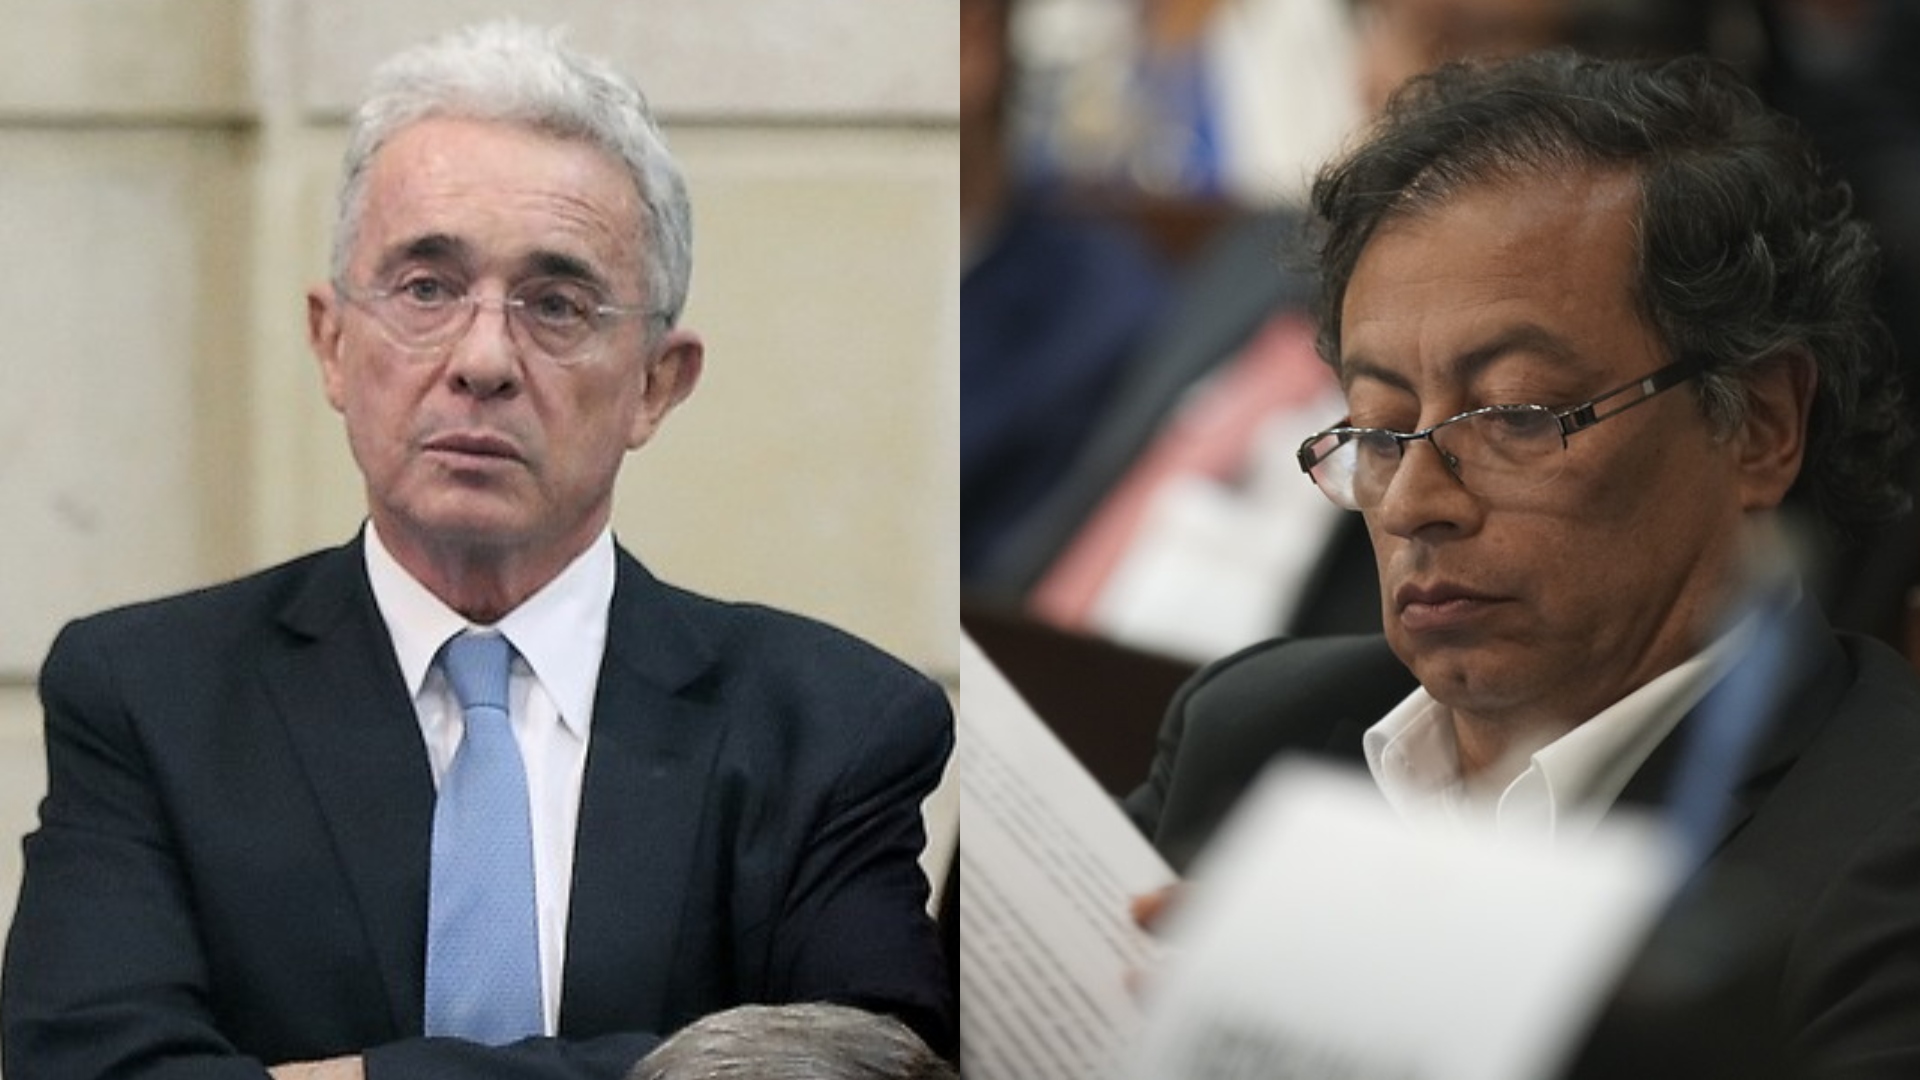 Imagen desfavorable de Álvaro Uribe superó a la de Gustavo Petro, según reciente encuesta